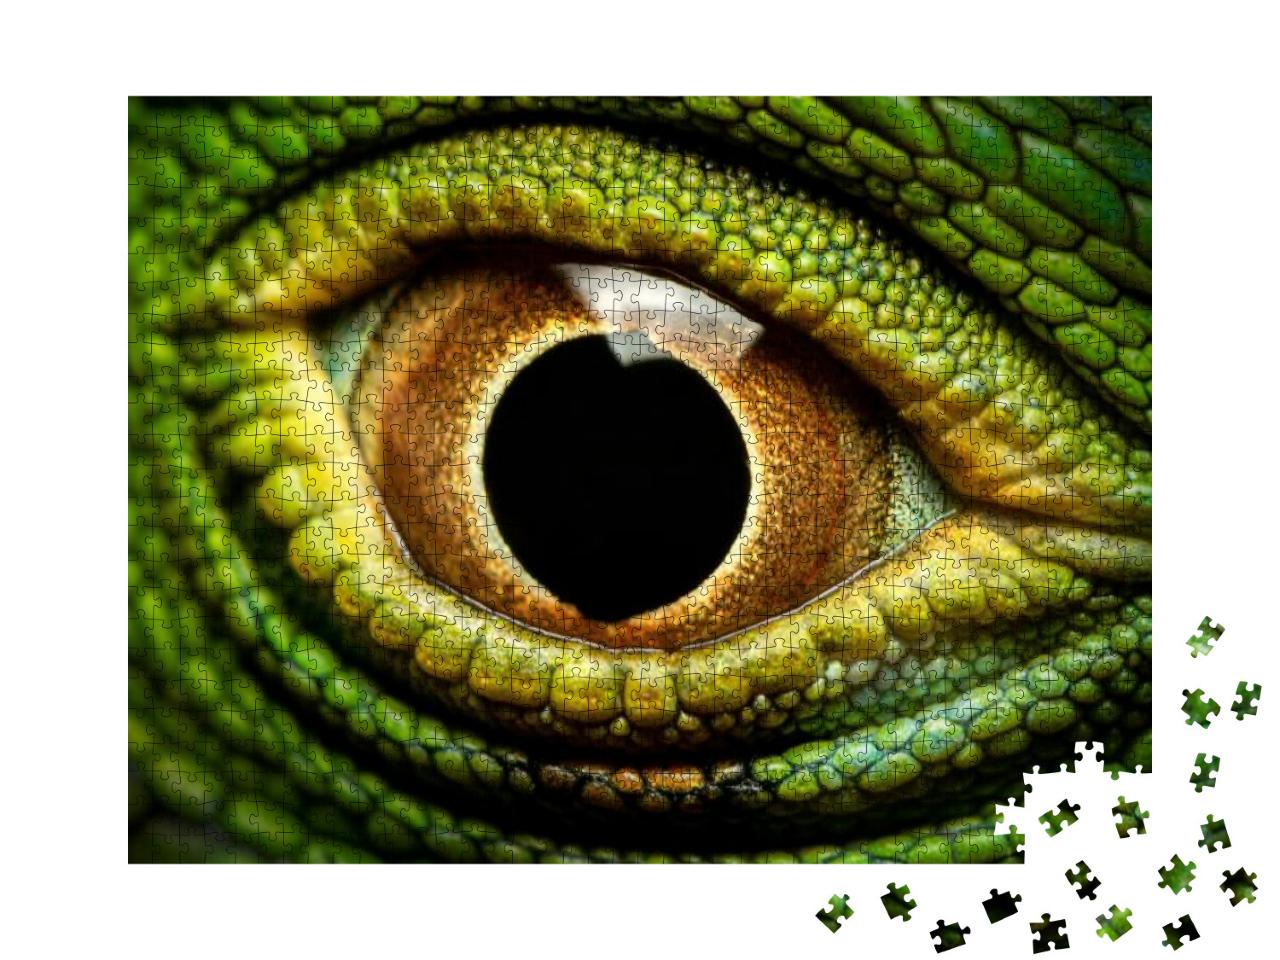 Puzzle 1000 Teile „Makroaufnahme des Auges eines grünen Leguans“